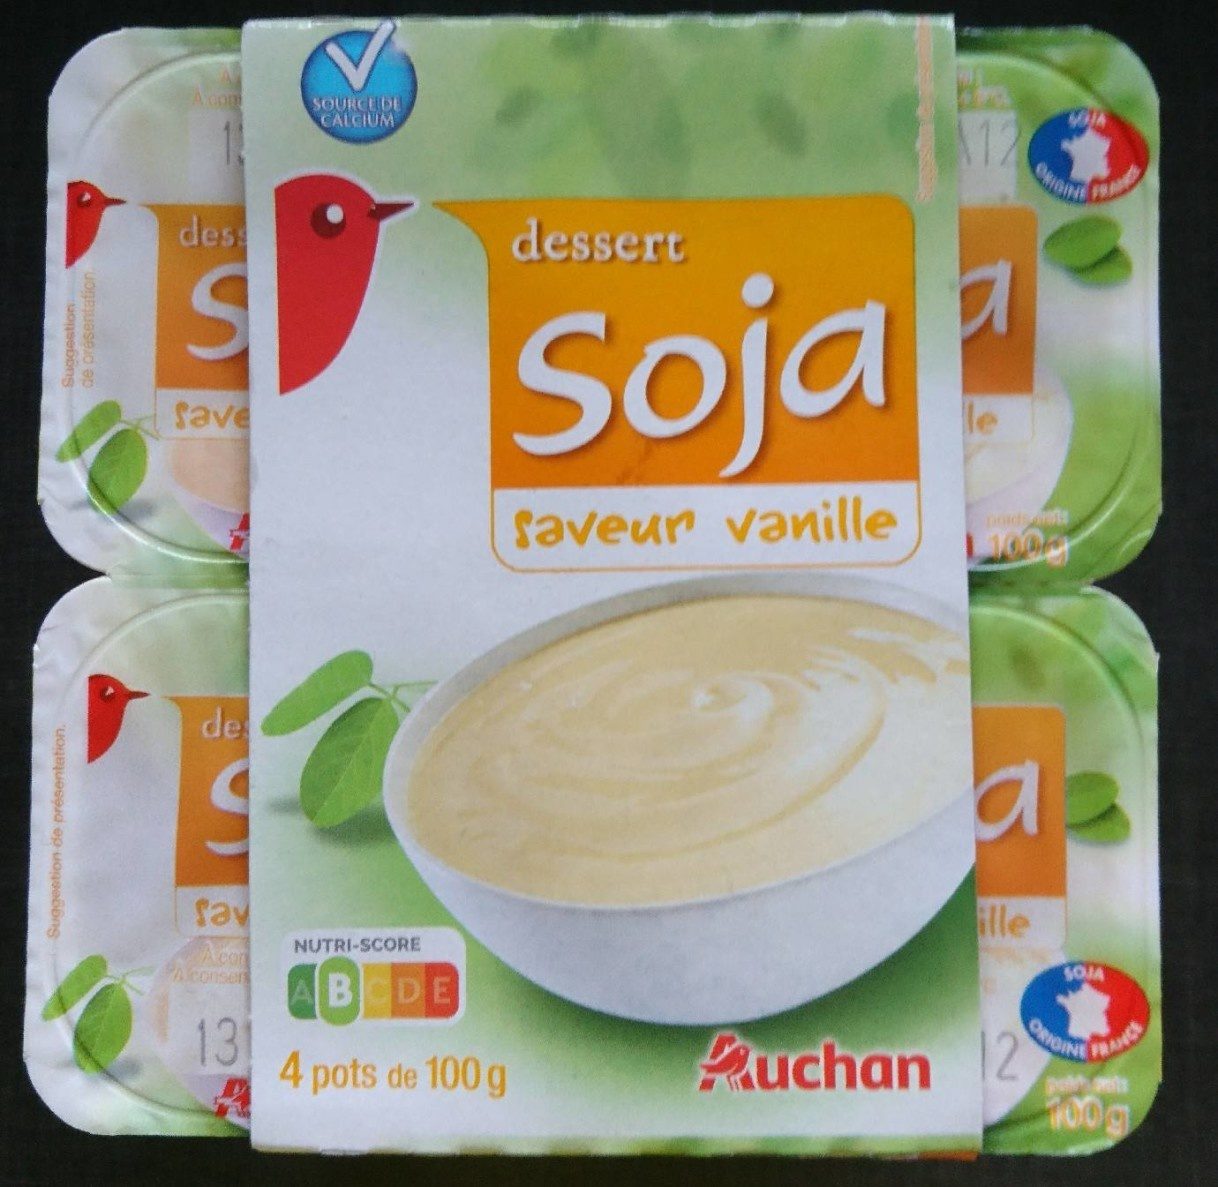 Creme dessert soja vanille - Produkt - fr